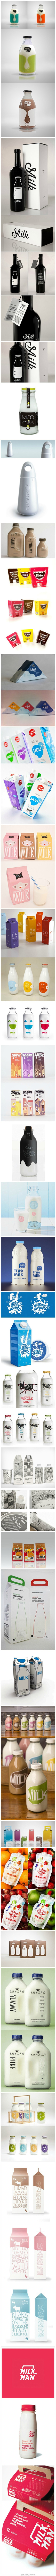 【29种牛奶包装设计】牛奶的消费可能是世...